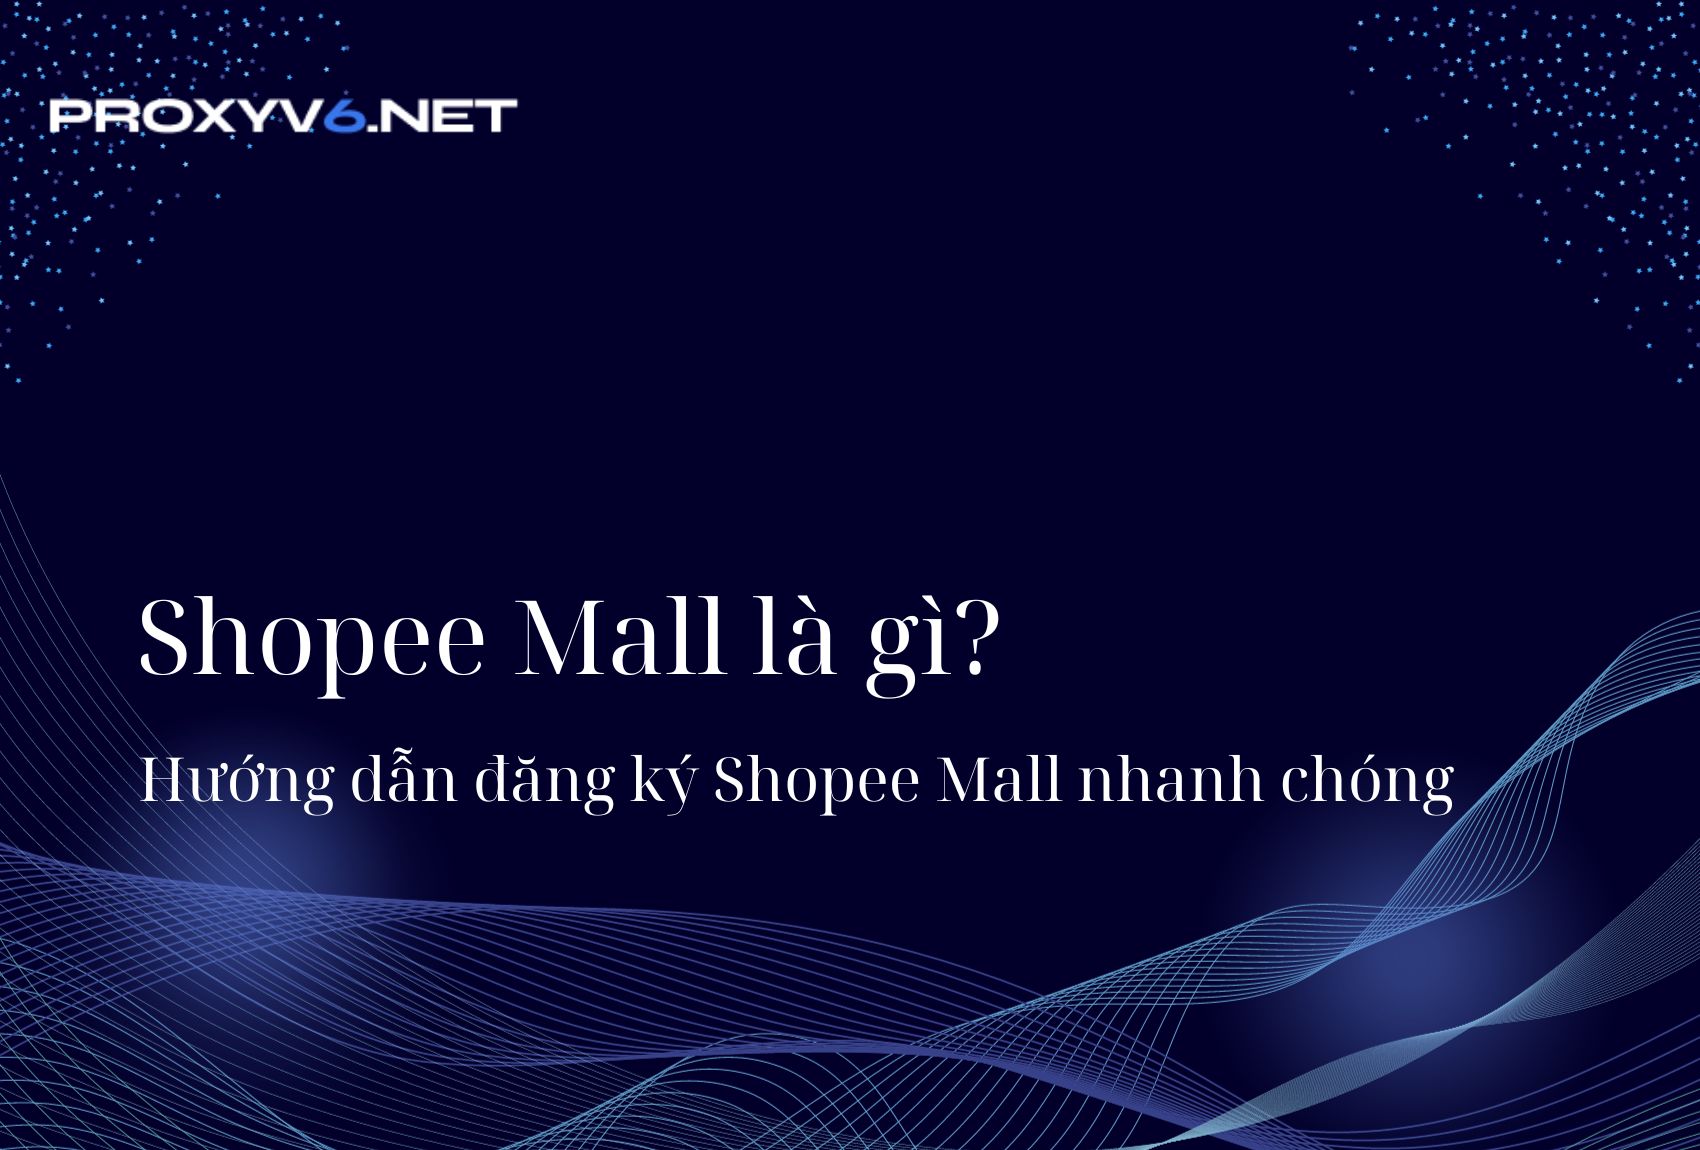 Shopee Mall là gì? Hướng dẫn đăng ký Shopee Mall nhanh chóng